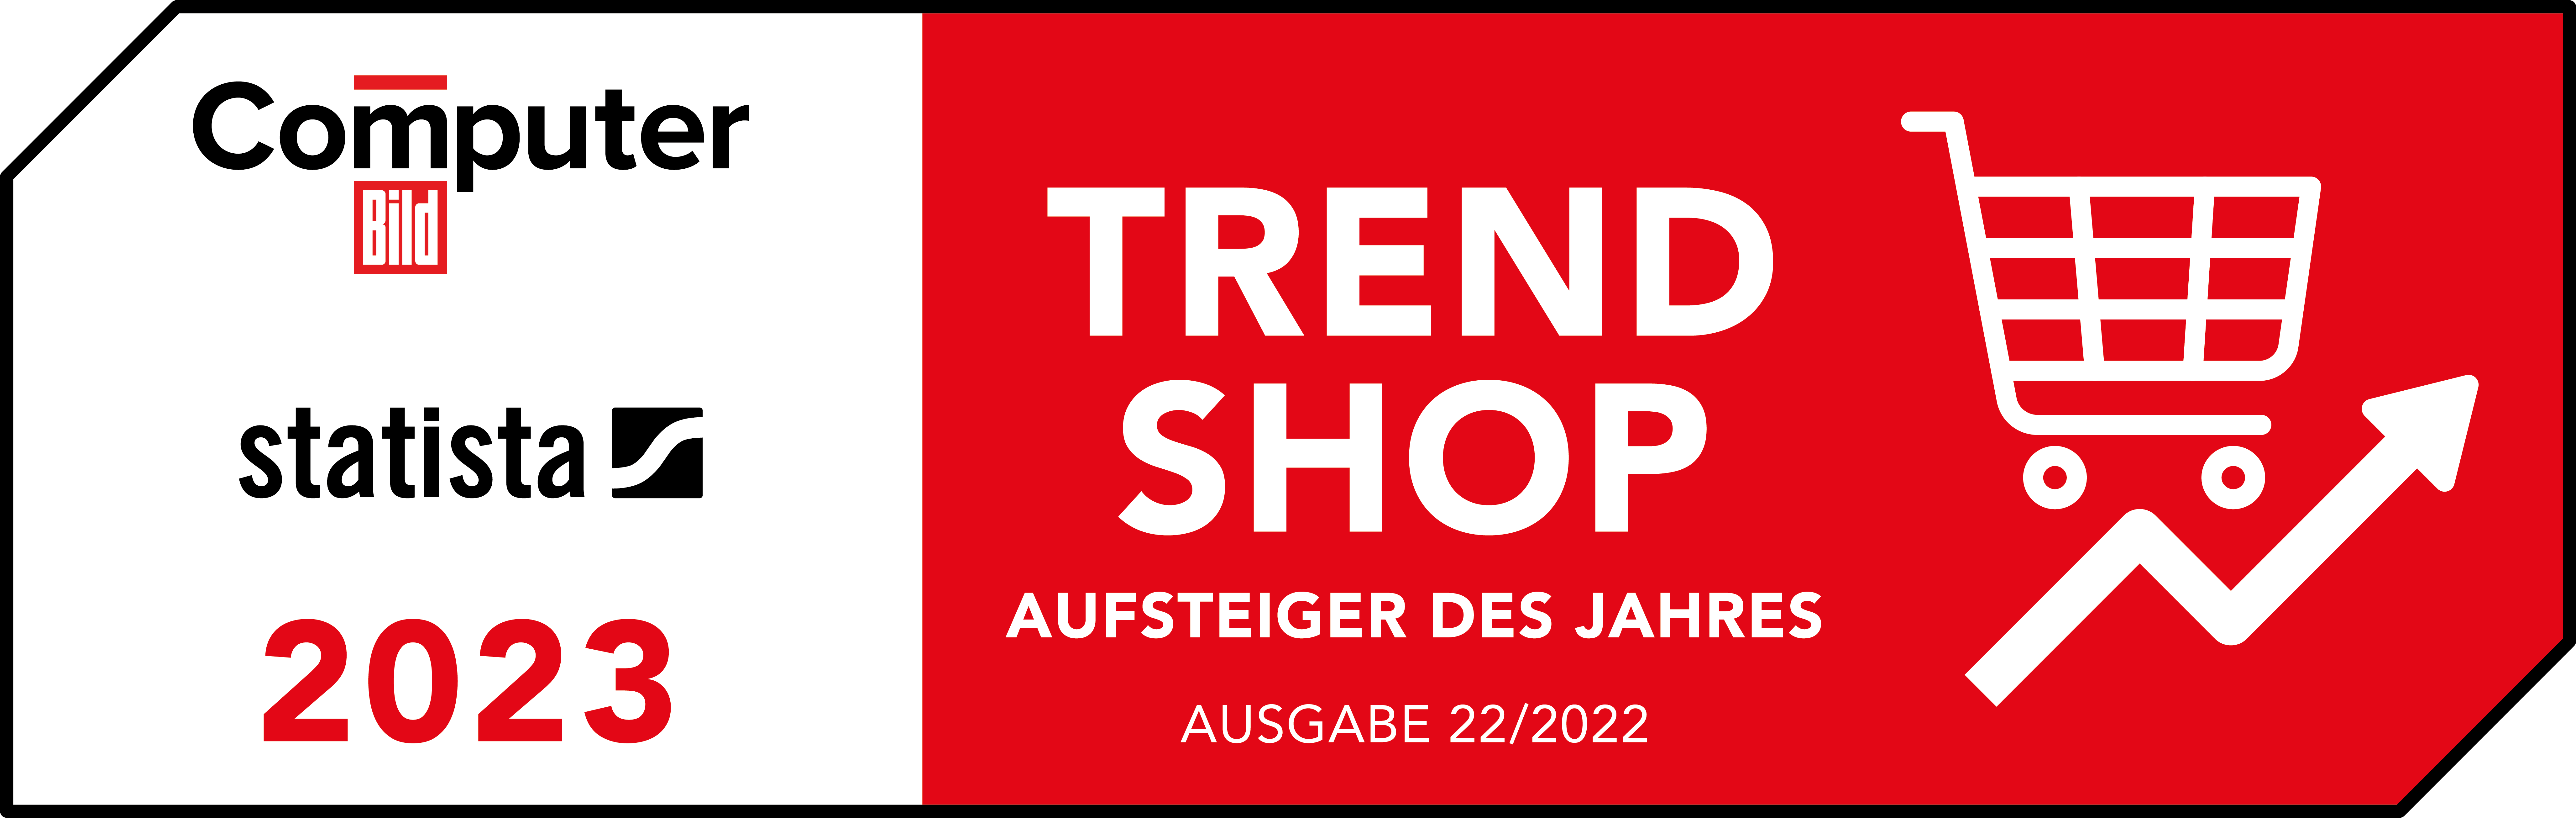 Computer Bild - Trend Shops 2023: Garten & Handwerk